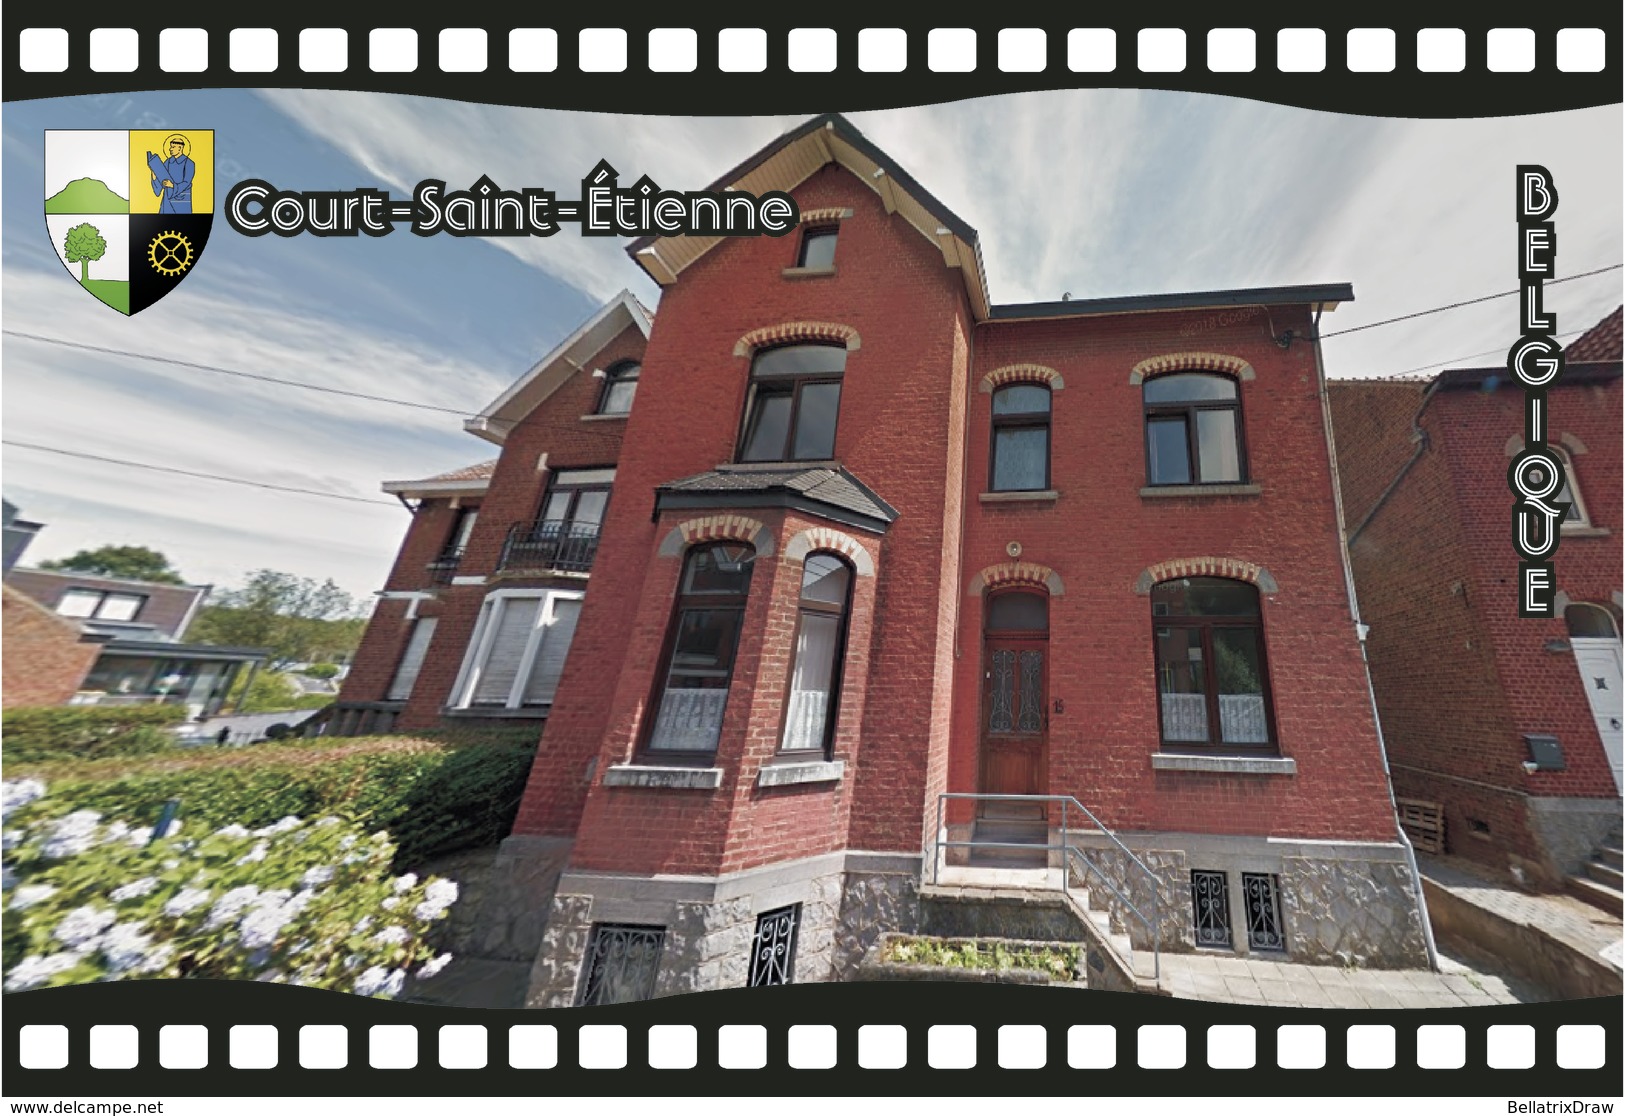 Postcard, REPRODUCTION, Municipalities Of Belgium, Streets Of Court-Saint-Étienne 30 - Cartes Géographiques